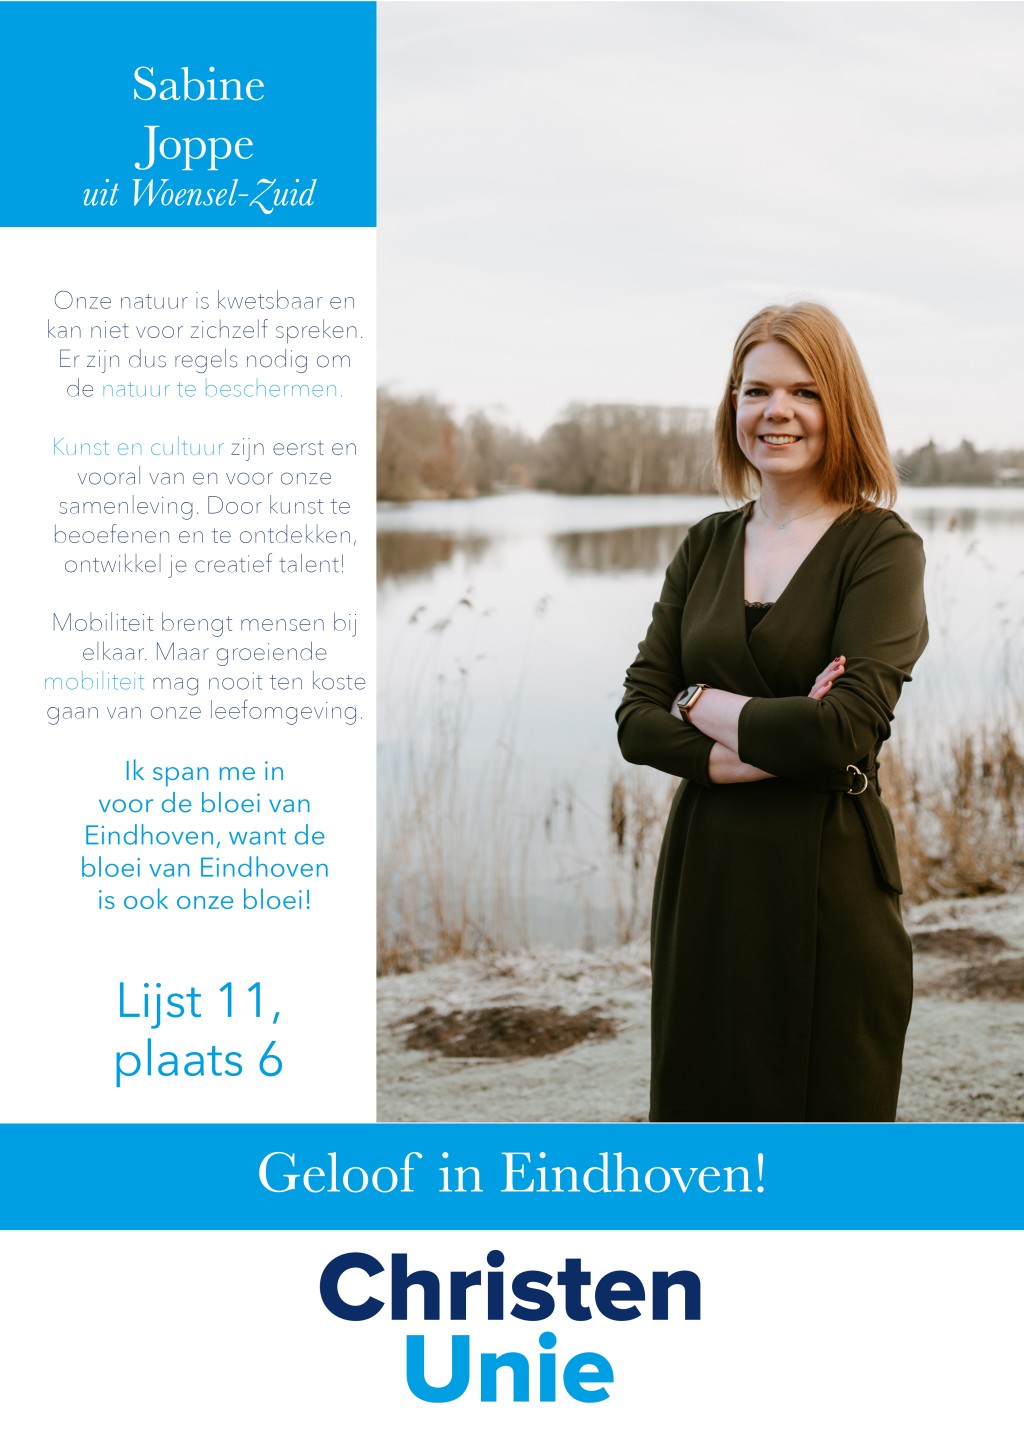 2022 GR22 - Kandidaten Eindhoven8